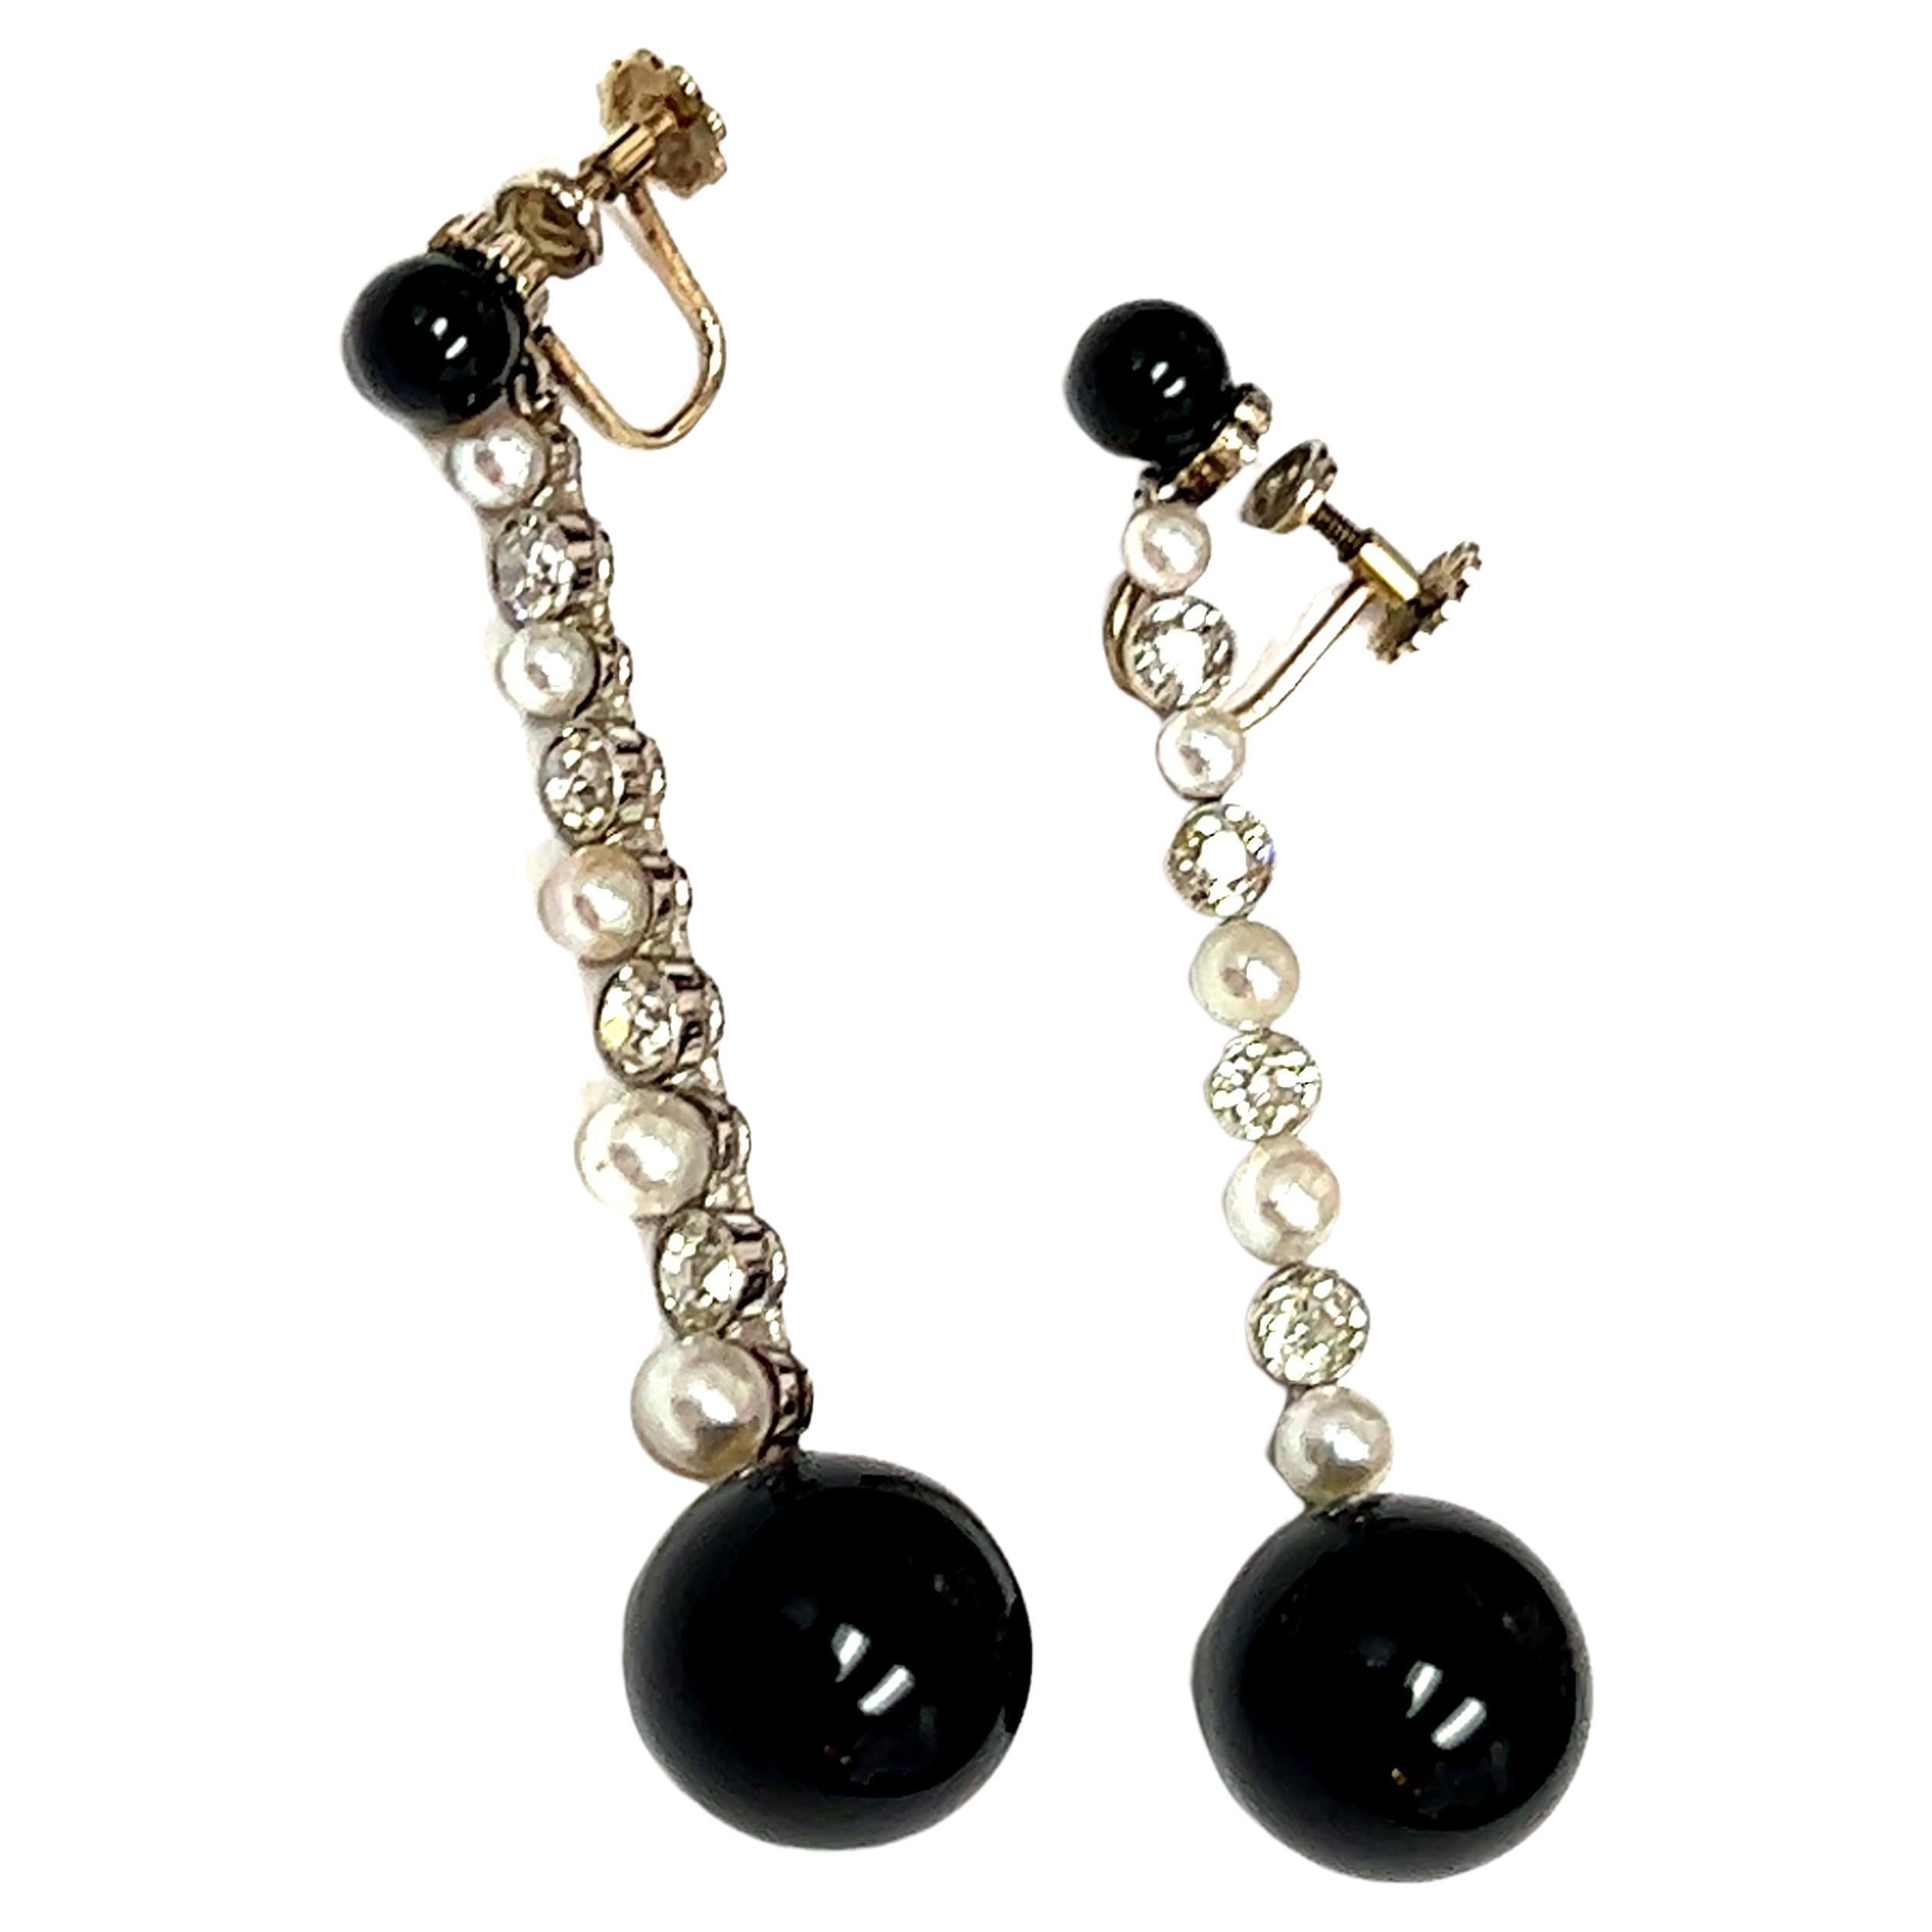 Une superbe paire d'Eleg en platine Art Deco avec onyx, perles et diamants, véritable incarnation de l'élégance intemporelle et de la précision géométrique caractéristiques de l'ère Art Deco. Les boucles d'oreilles présentent des perles rondes en